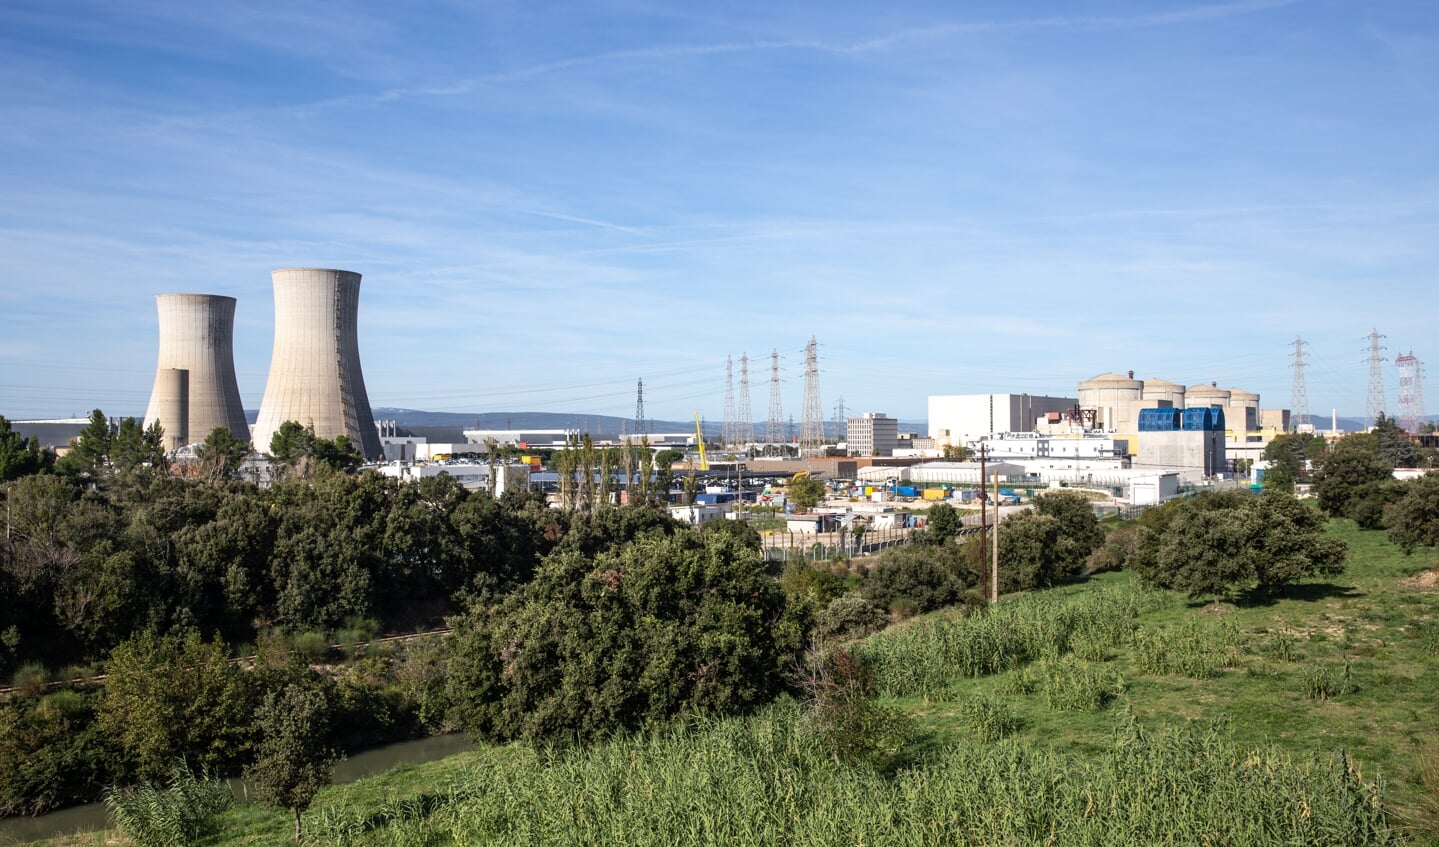 De reactor in Saint-Paul-Trois-Châteaux is een van de oudste nog actieve kerncentrales in Frankrijk. 